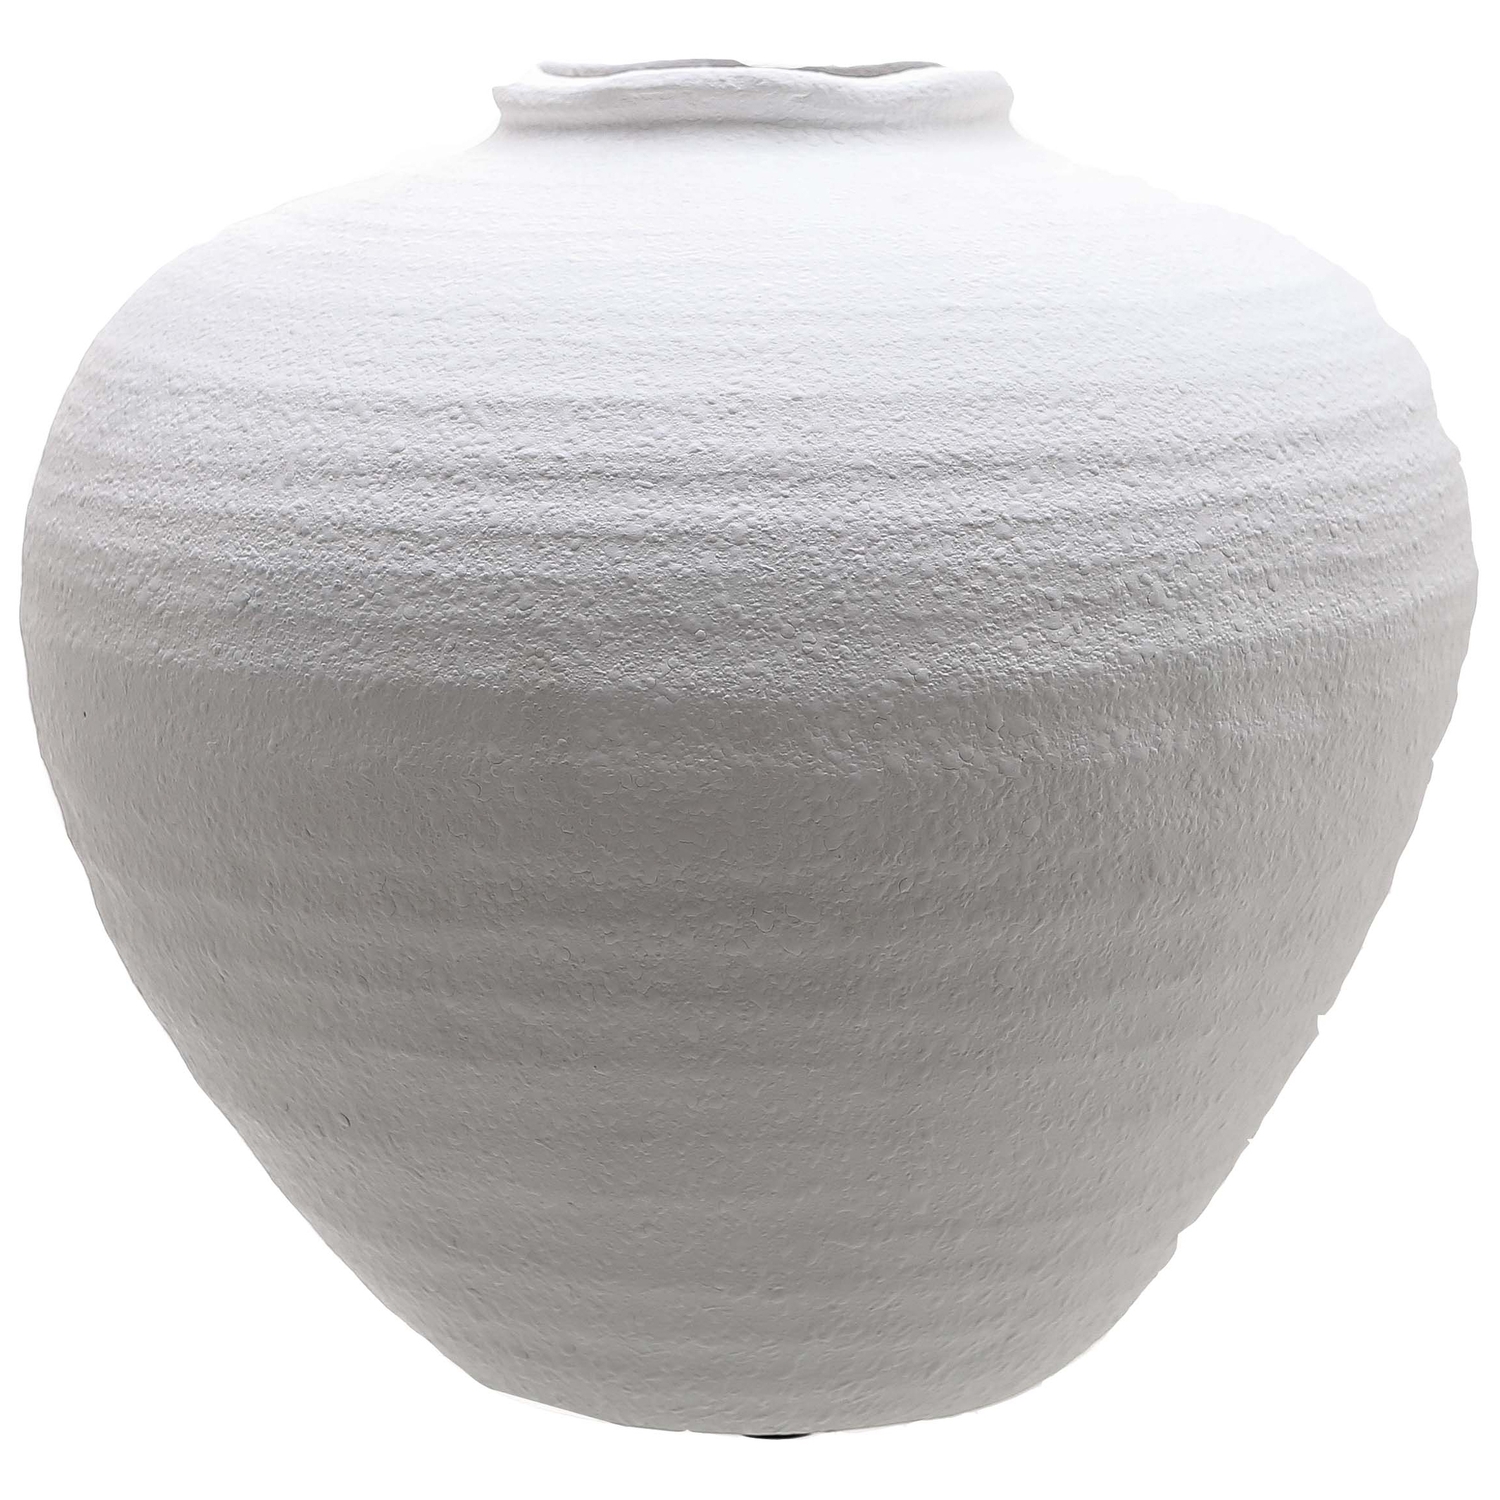 Regola Large Matt White Ceramic Vase - Image 1